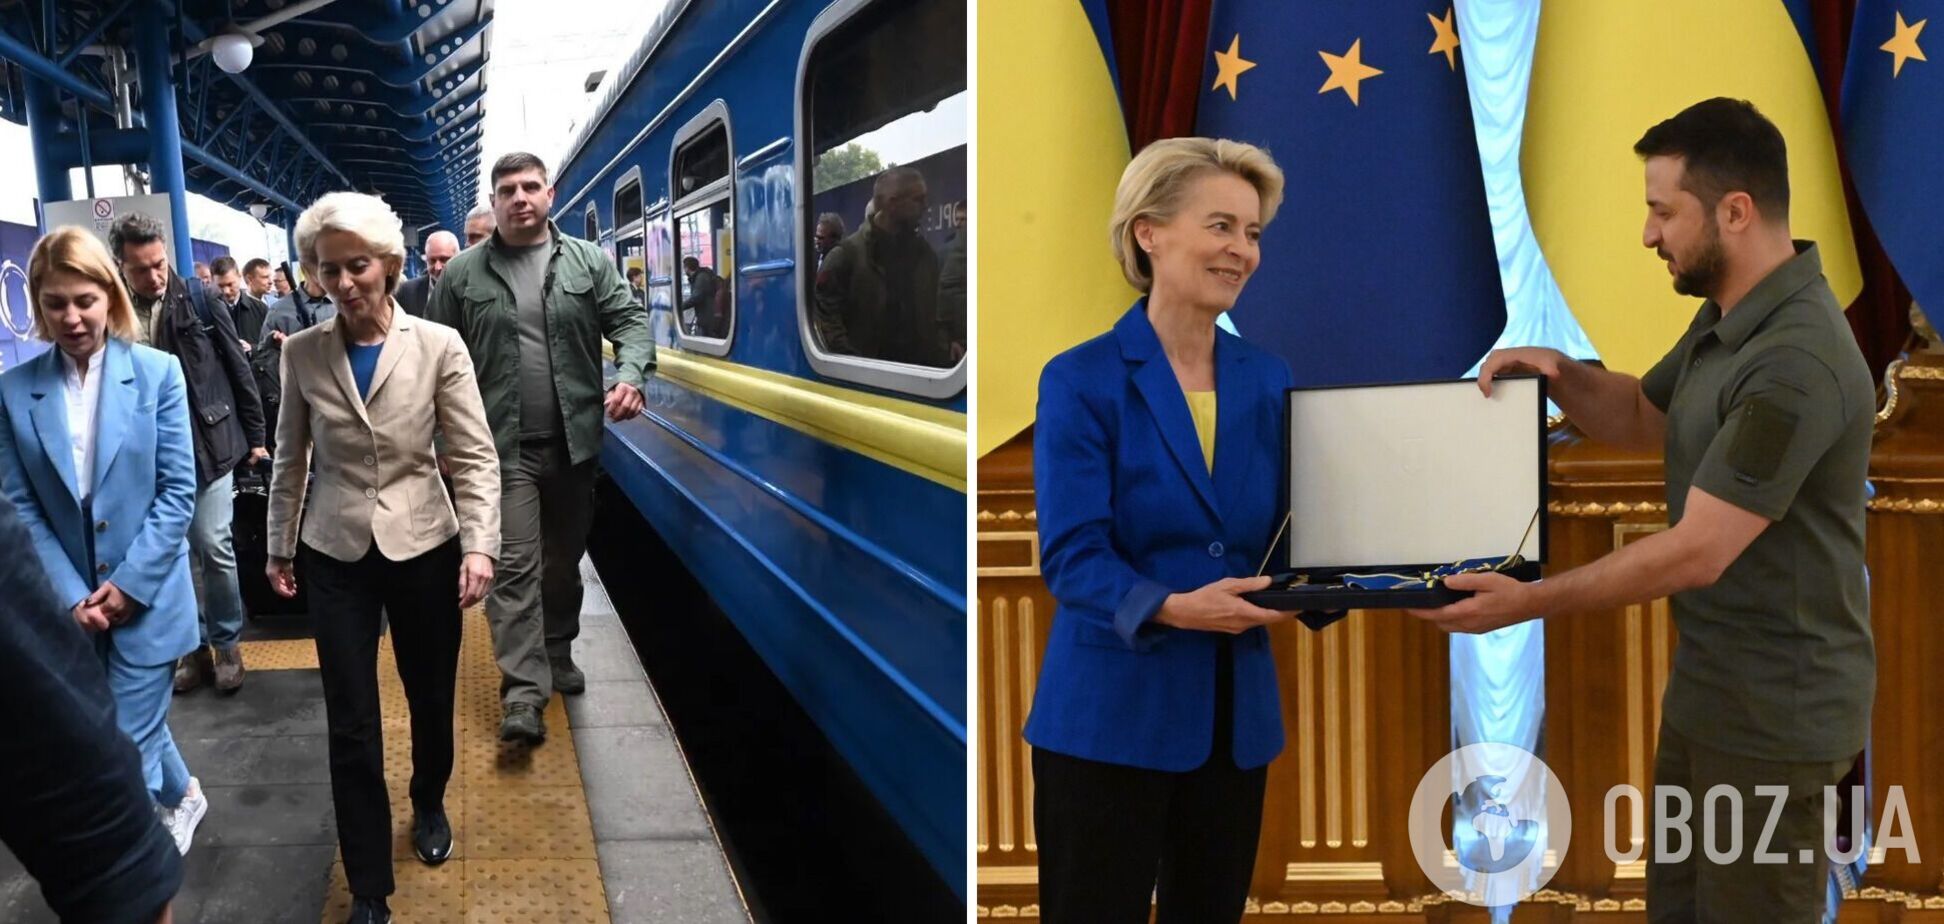 Глава Еврокомиссии прибыла в Украину: на Аллее Смелости установили табличку с именем Урсулы фон дер Ляйен. Фото